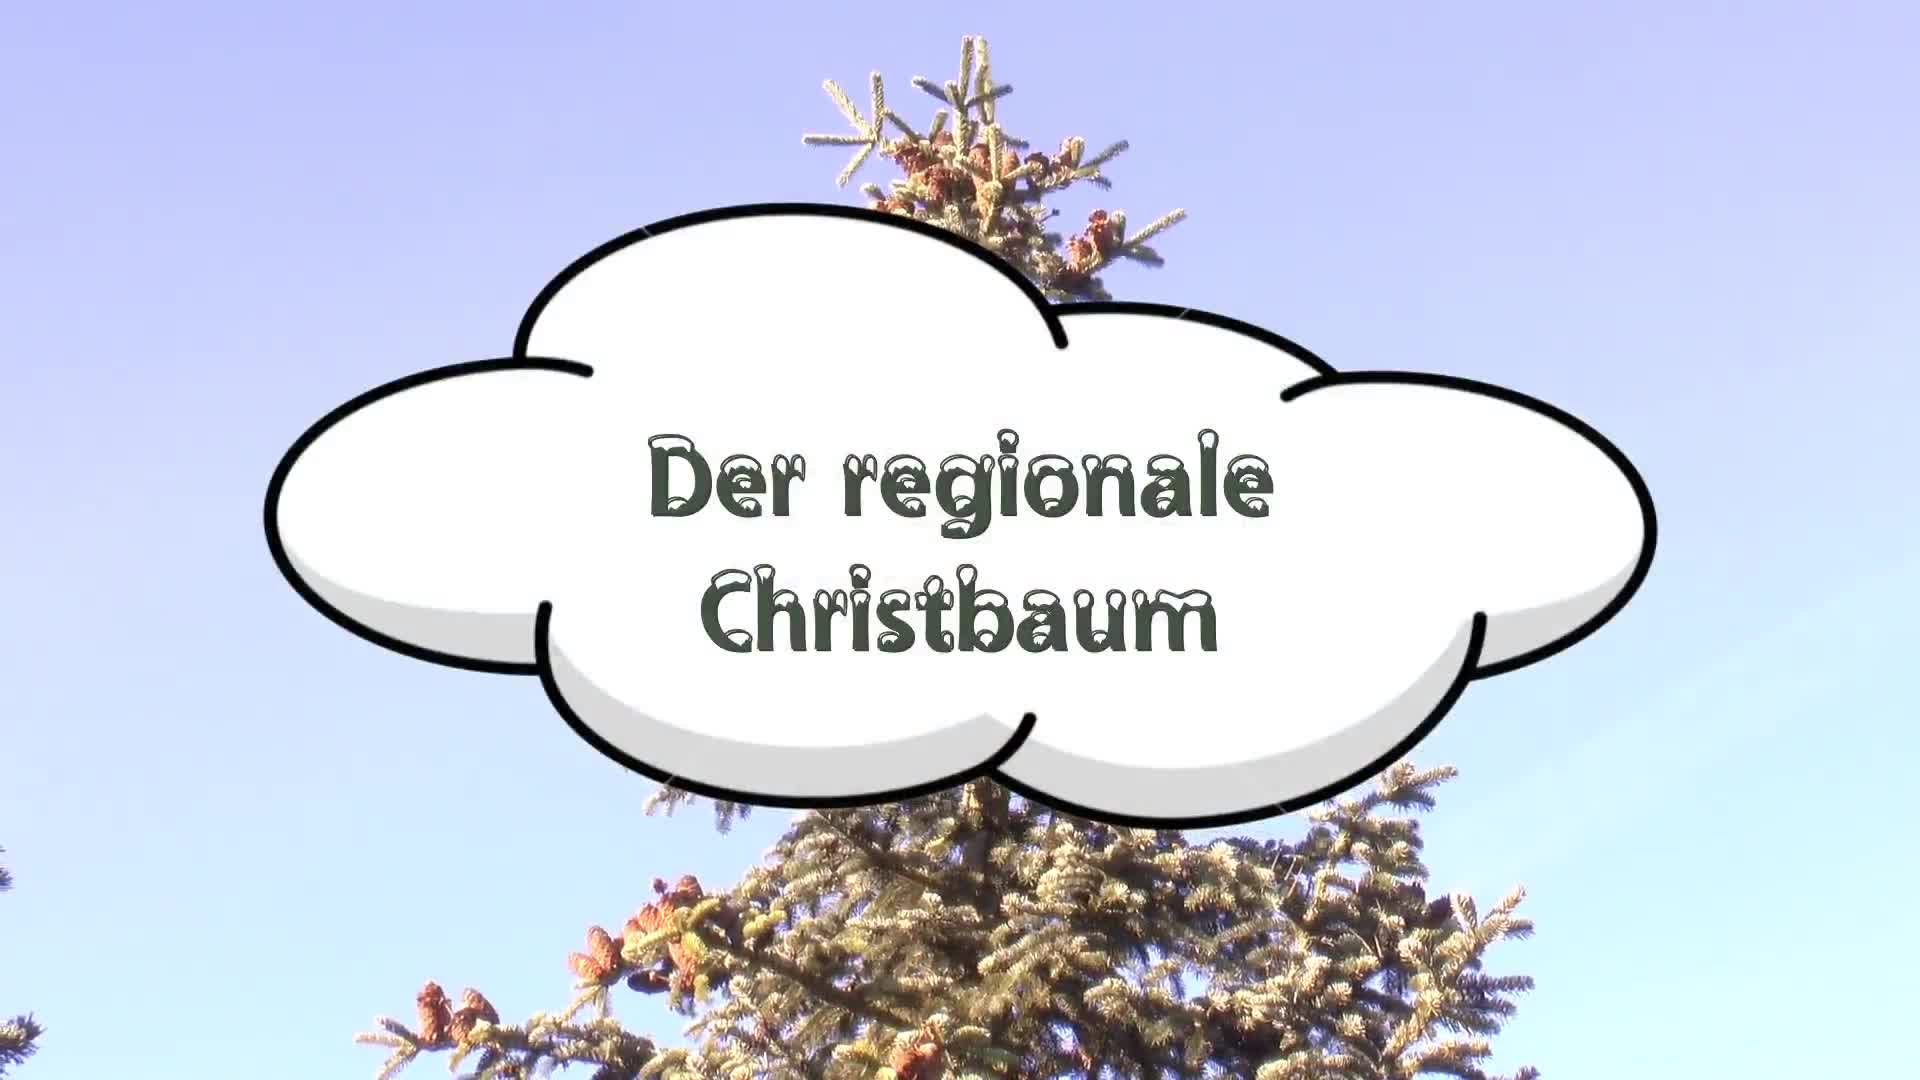 Der regionale Christbaum